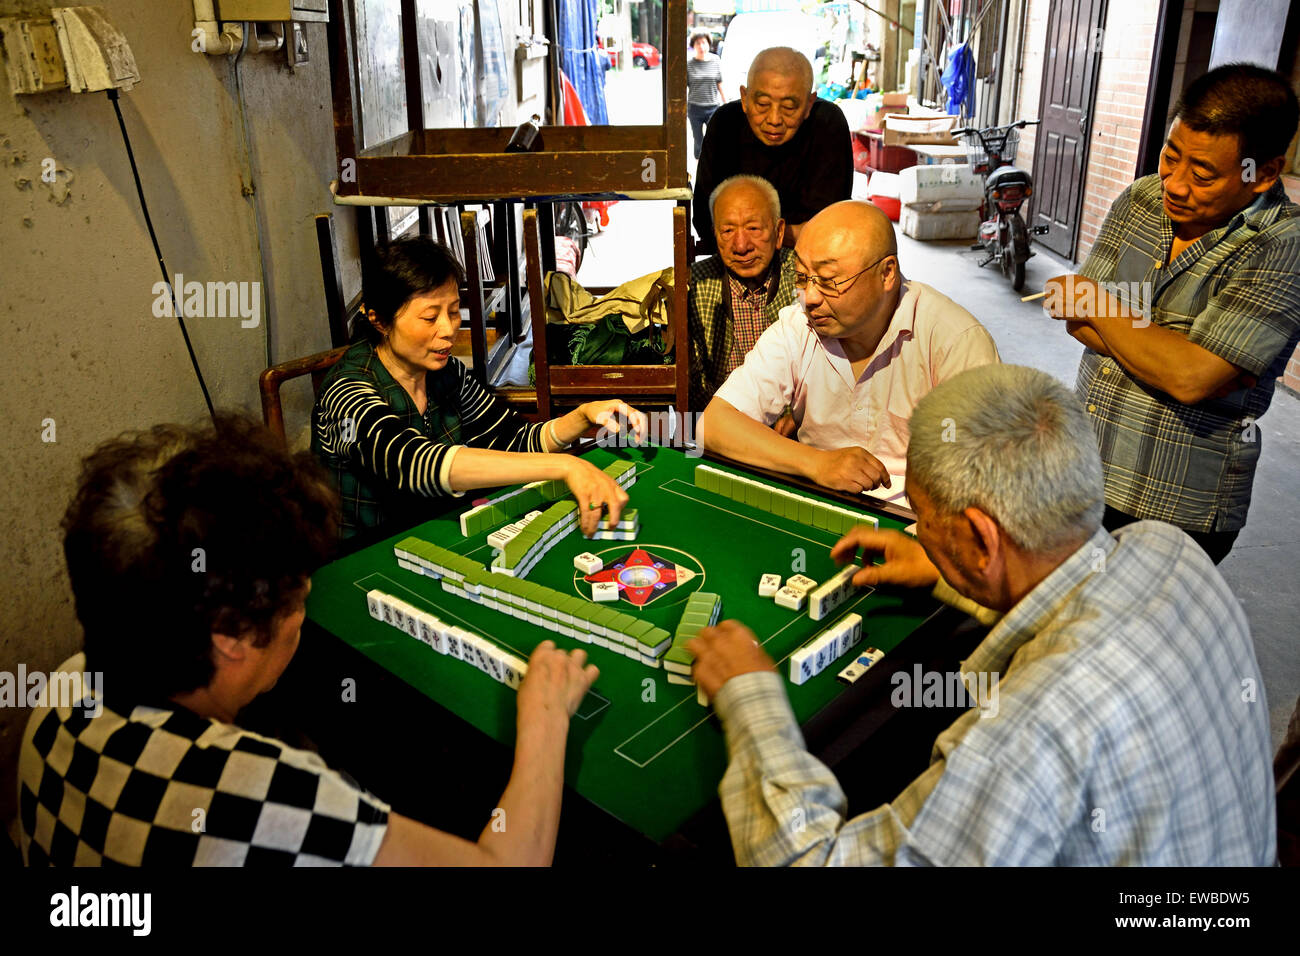 A Mahjong game Shanghai gamble gambling China Chinese Stock Photo